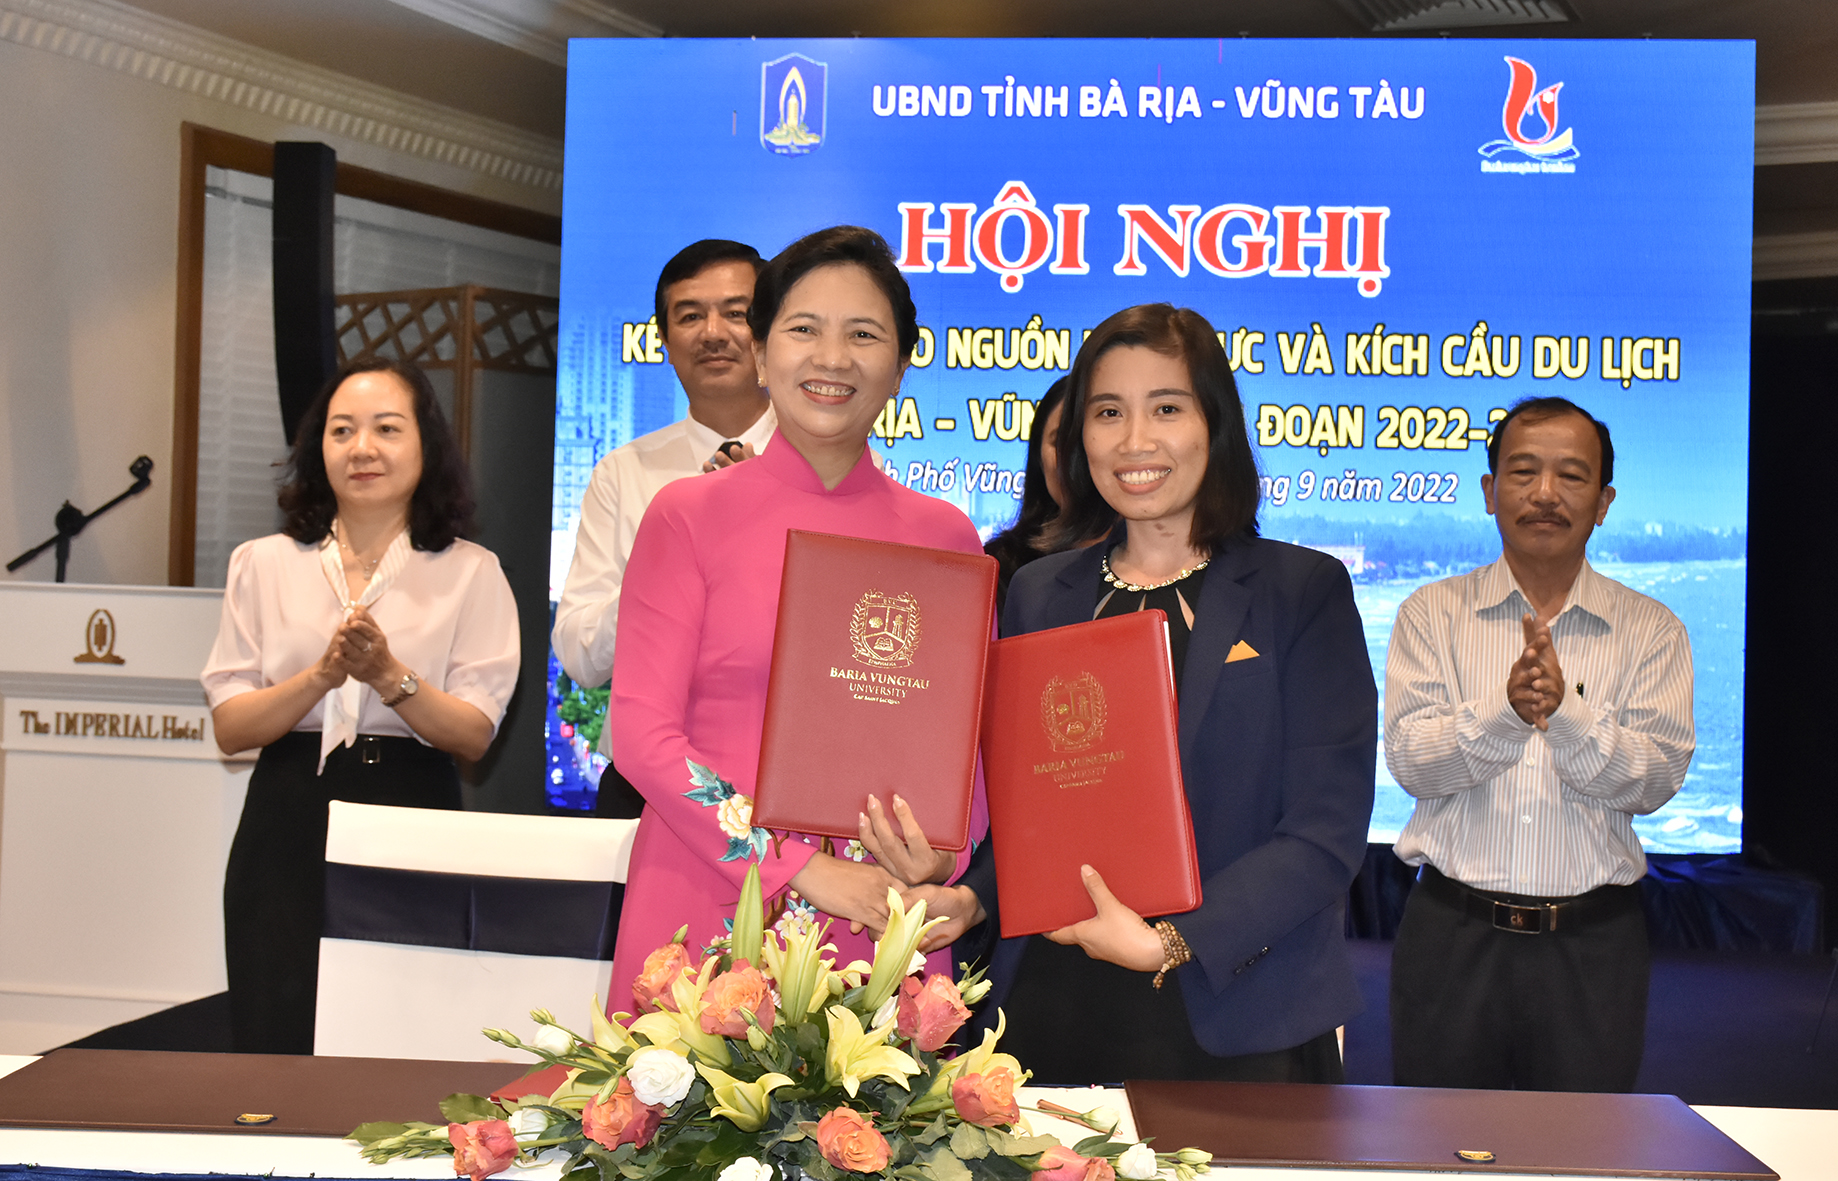 Đại diện Trường ĐH Bà Rịa-Vũng Tàu và khách sạn Parami Hồ Tràm ký hợp đồng nguyên tắc liên kết đào tạo nhà trường-DN. 